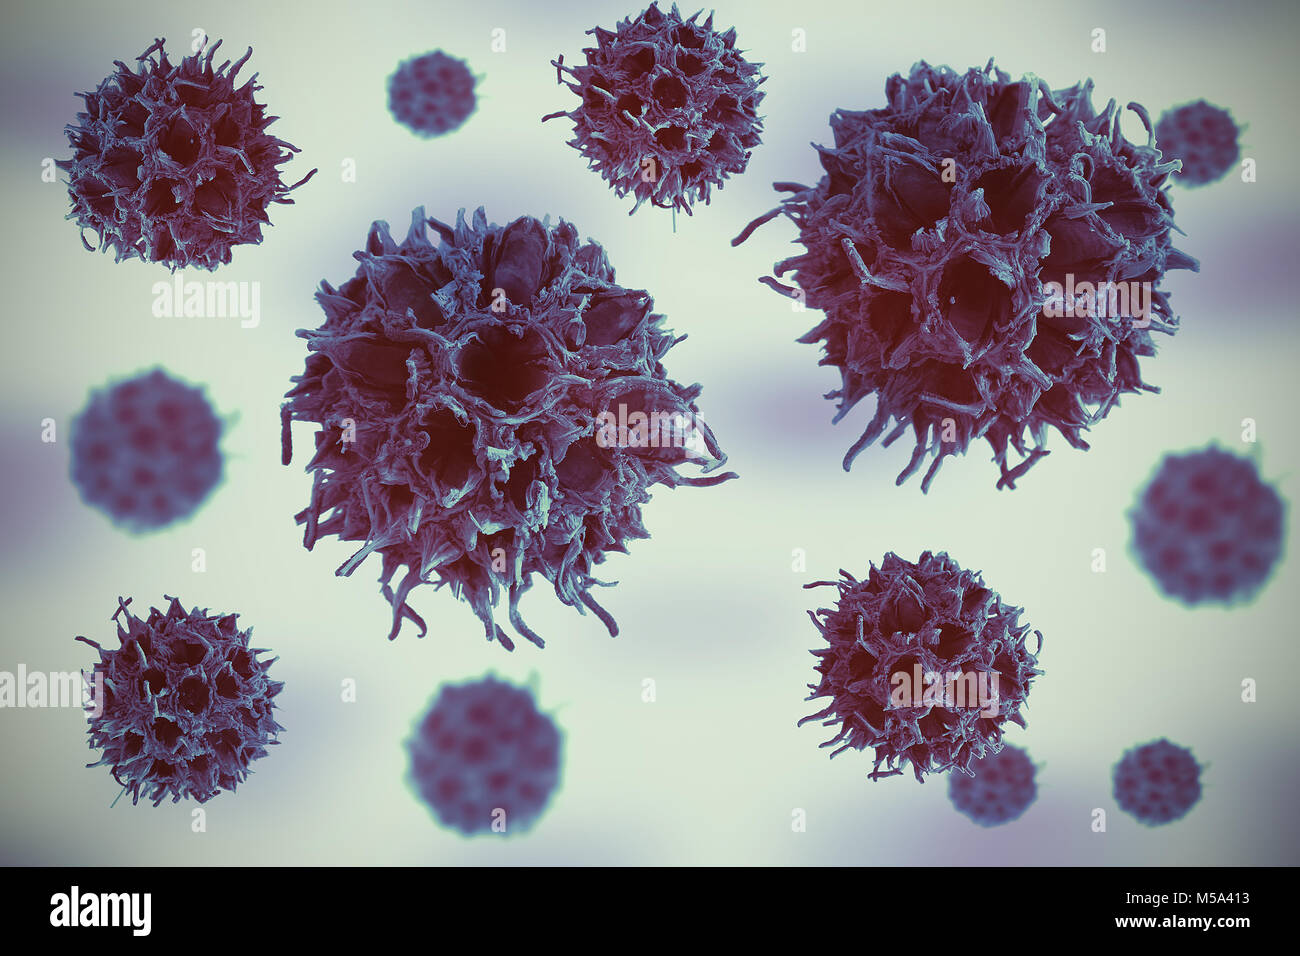 Viren und Krankheitserreger Replikation und virale Infektion in einer Epidemie. Nanobiology Hintergrund. Stockfoto